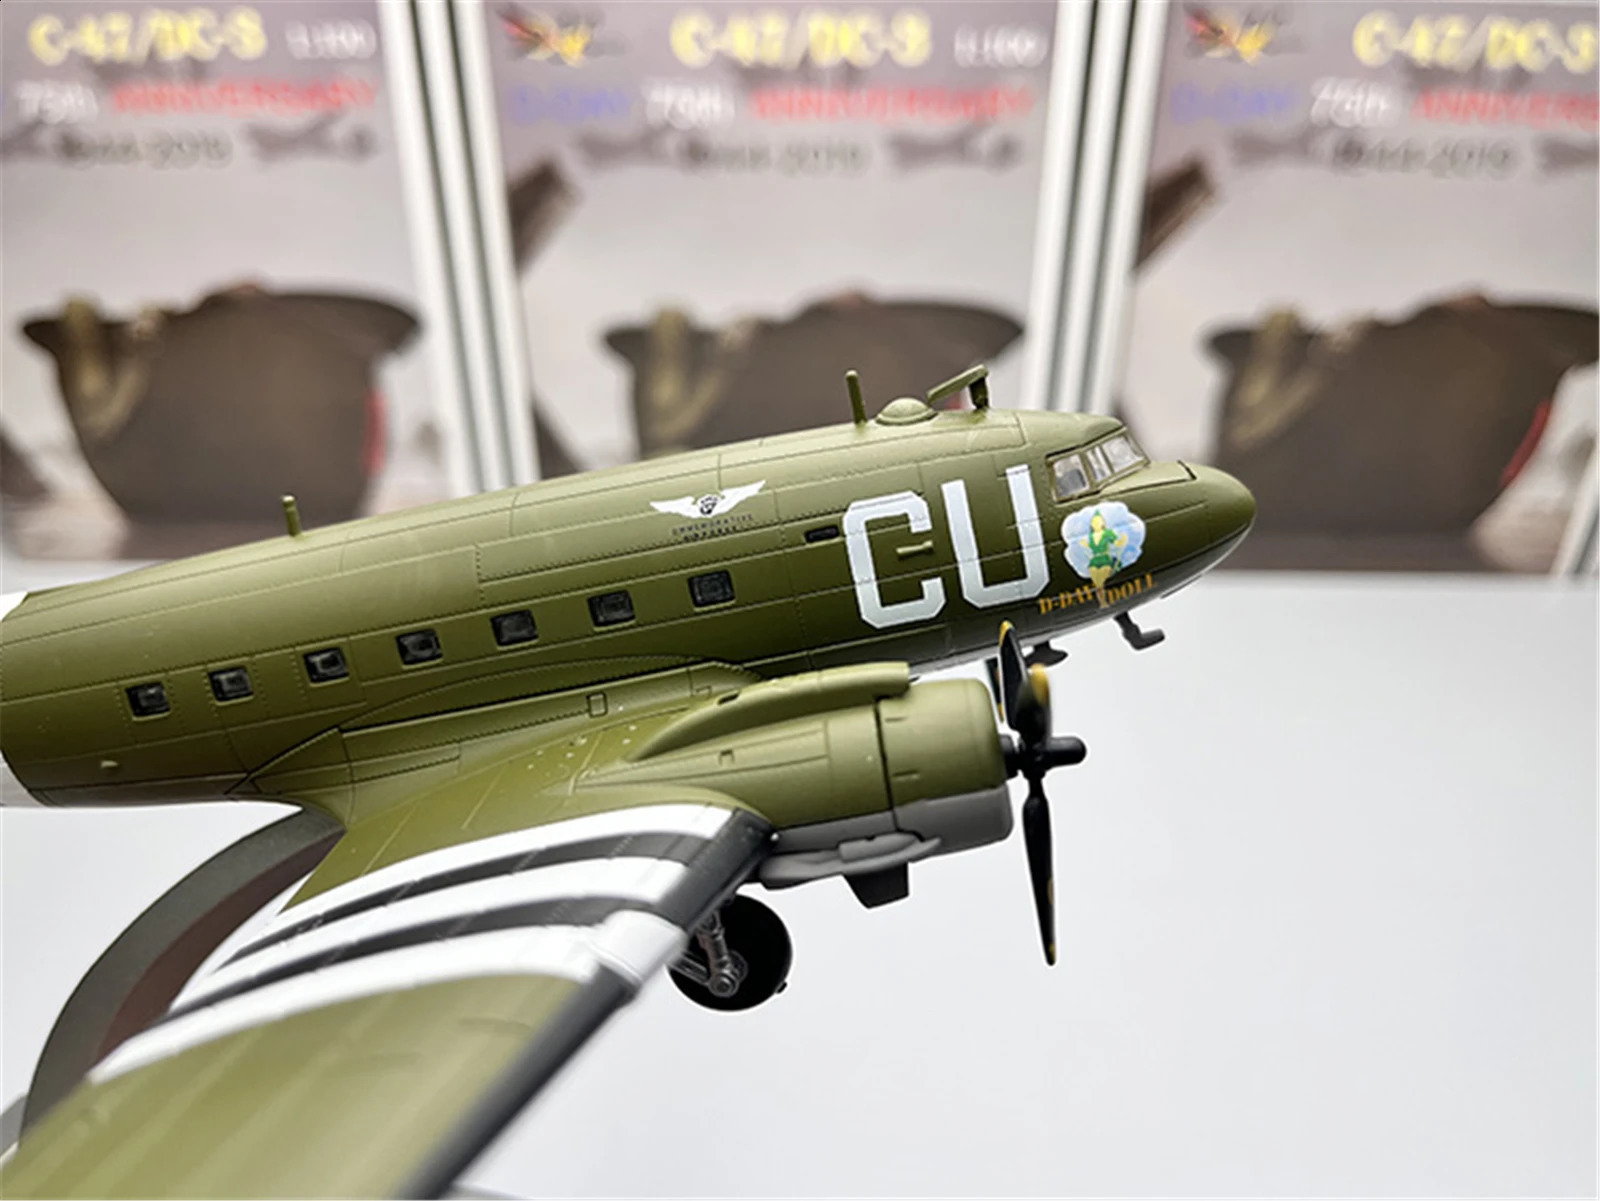 Масштаб 1100 Модель истребителя США C47 DC3 Air Train Военный самолет Реплика авиационного самолета времен мировой войны Коллекционная игрушка для мальчика 240201